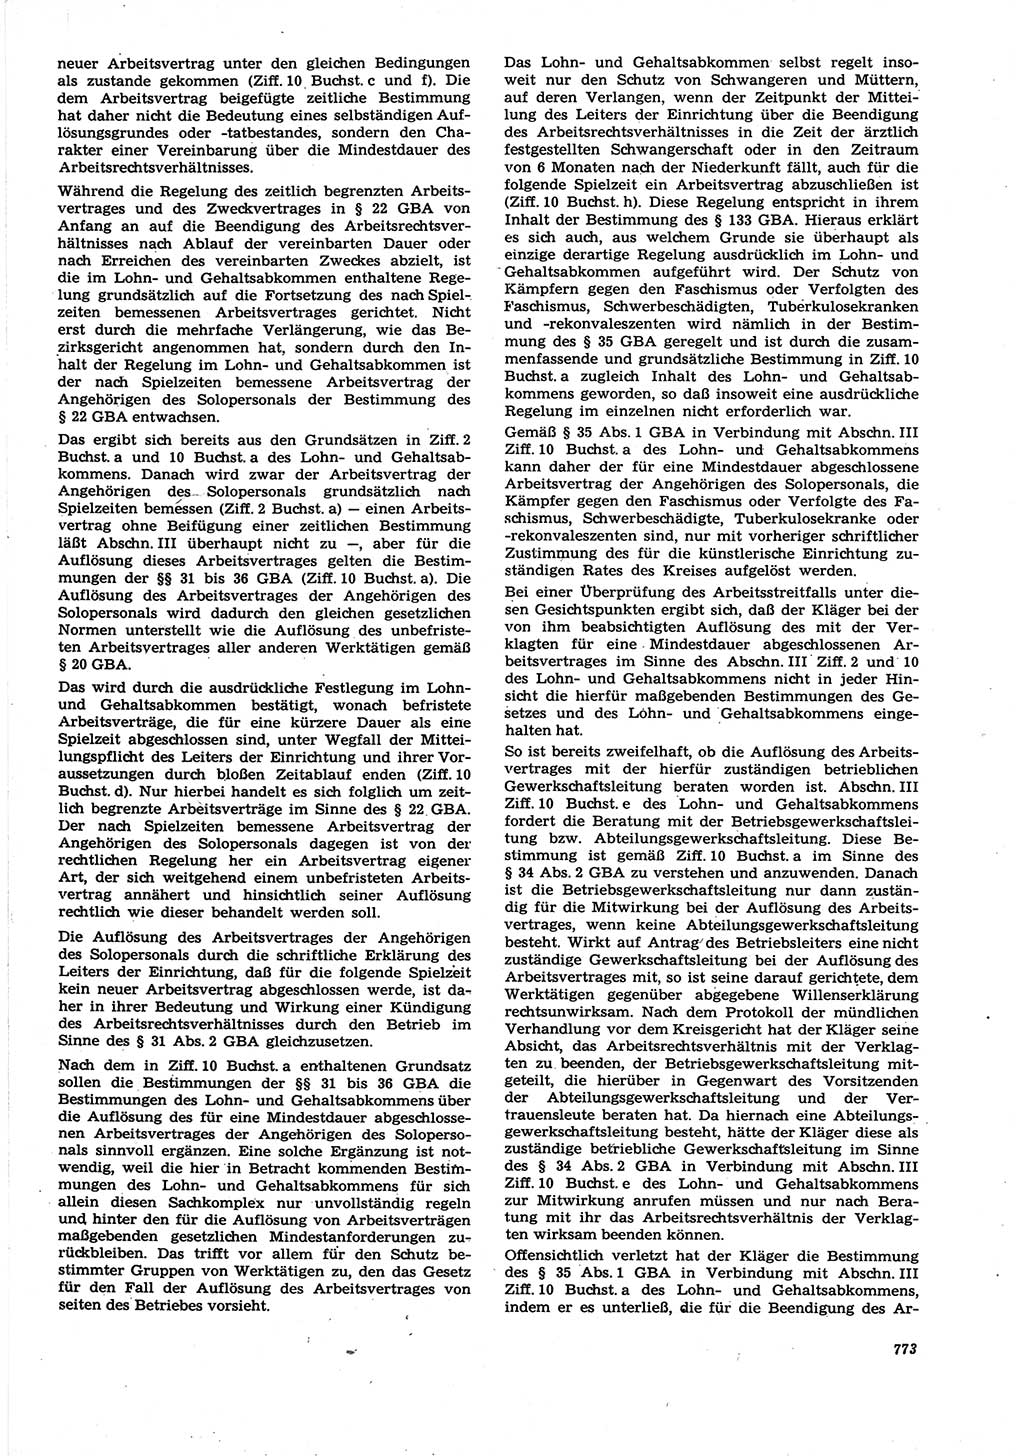 Neue Justiz (NJ), Zeitschrift für Recht und Rechtswissenschaft [Deutsche Demokratische Republik (DDR)], 21. Jahrgang 1967, Seite 773 (NJ DDR 1967, S. 773)